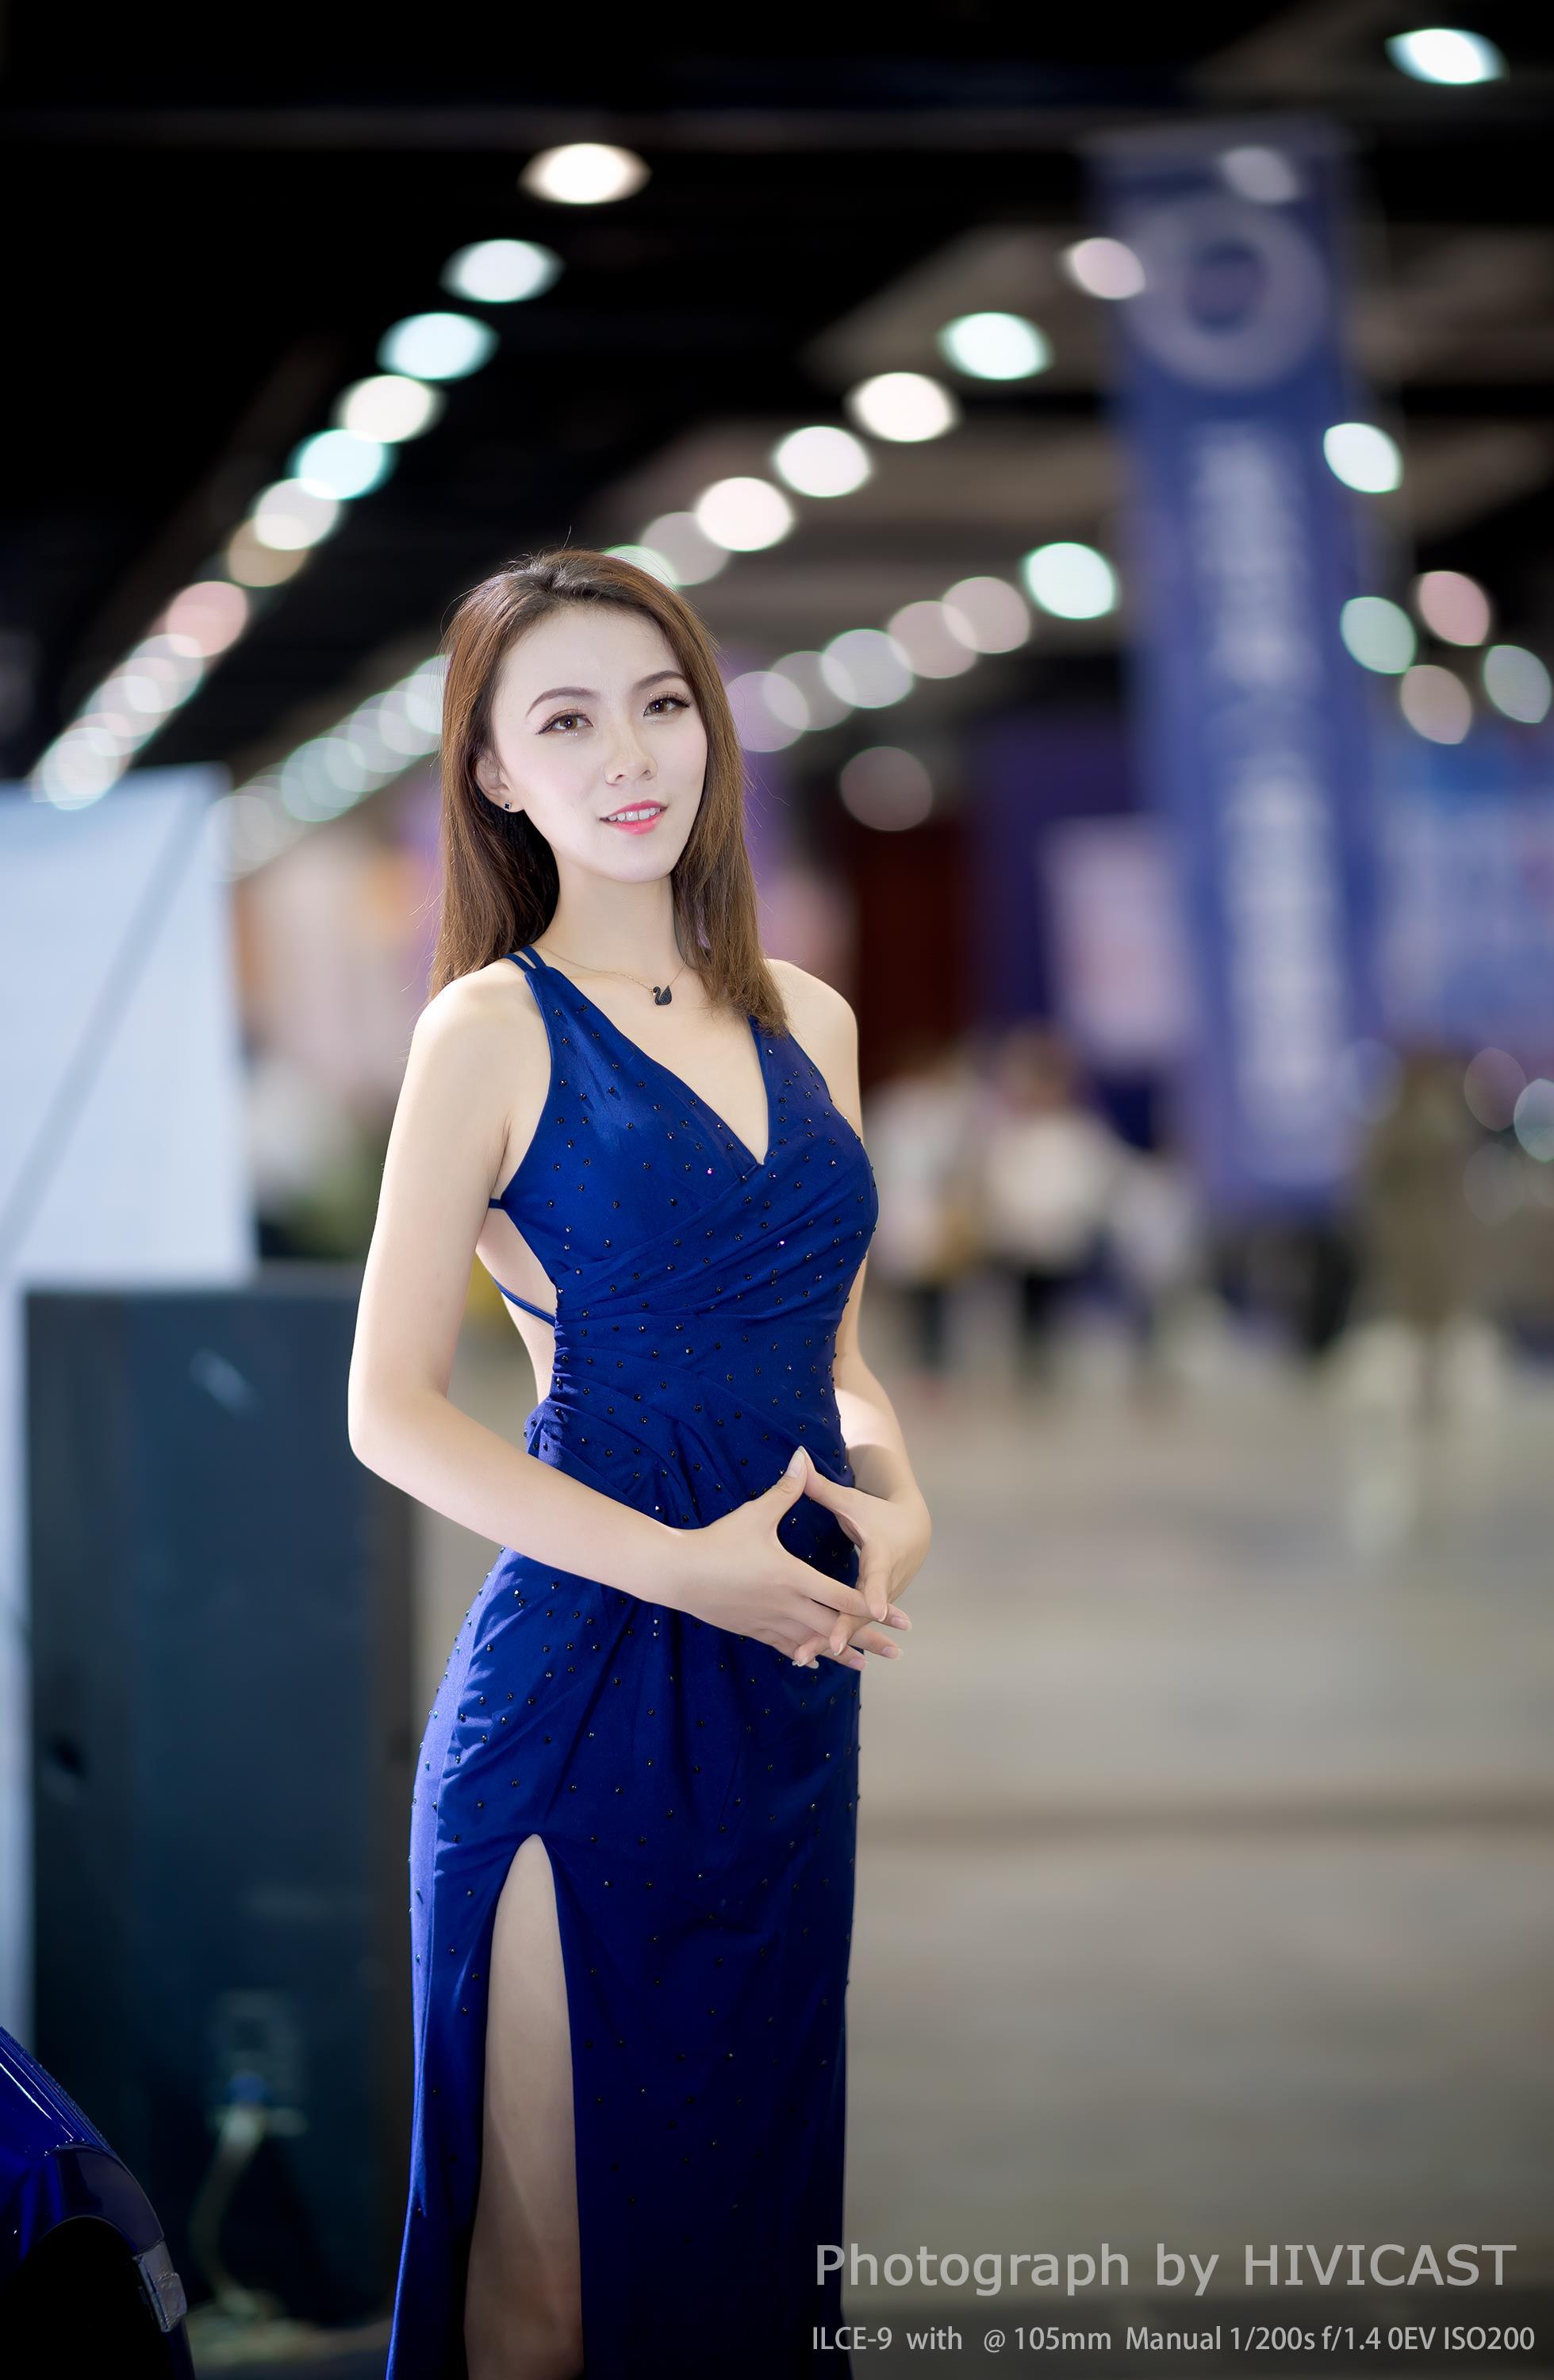 2017沈阳车展 北京现代汽车展台 美女车模蓝色高叉裸背连身裙写真,